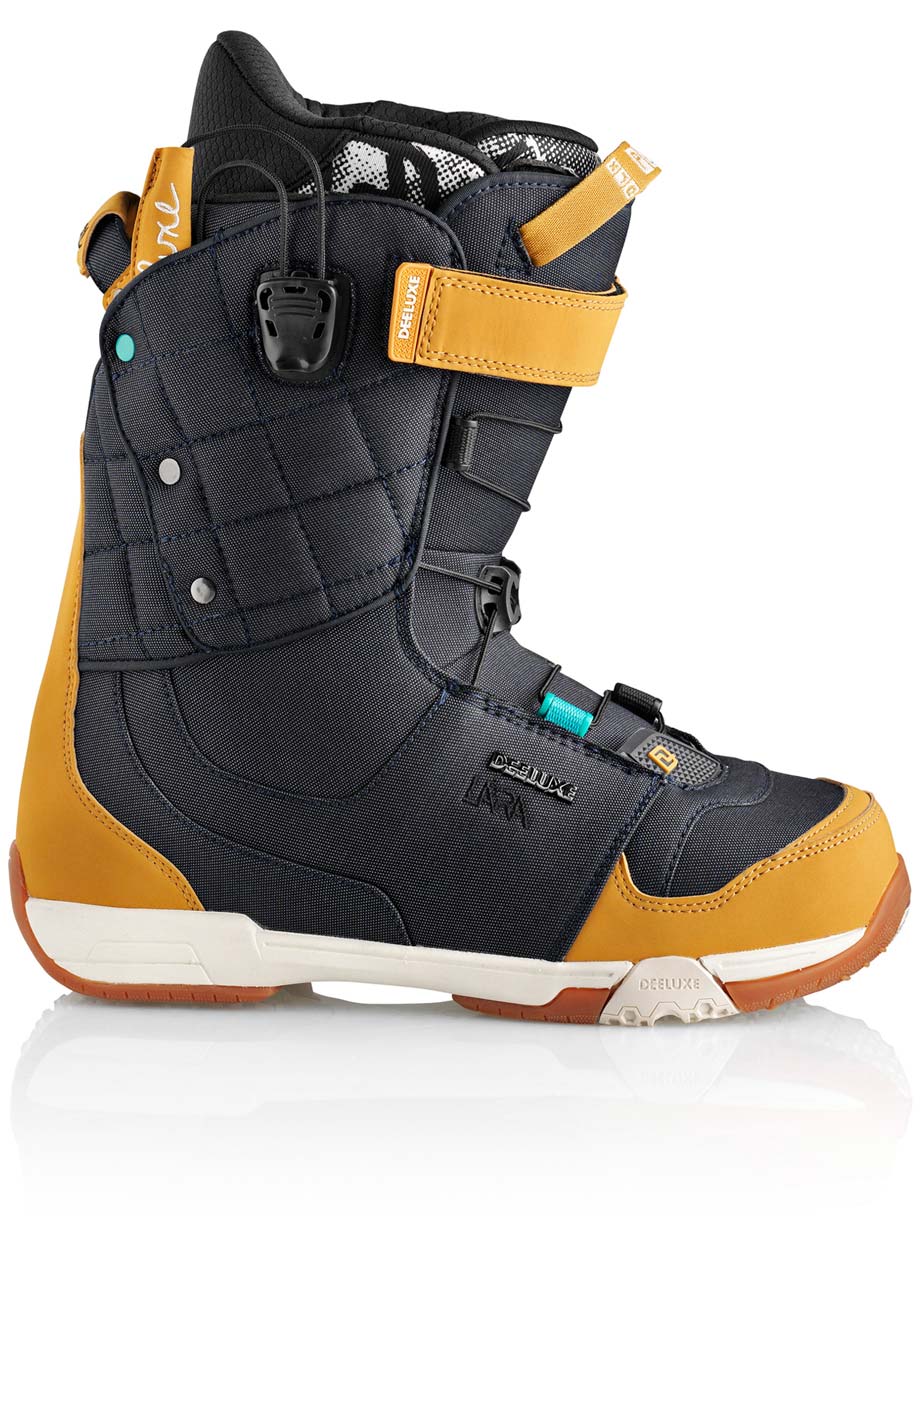 Ботинки сноубордические Deeluxe Ray Lara  размер 24,0 denim (темный джинс + беж кож.зам) 2013 год фото 